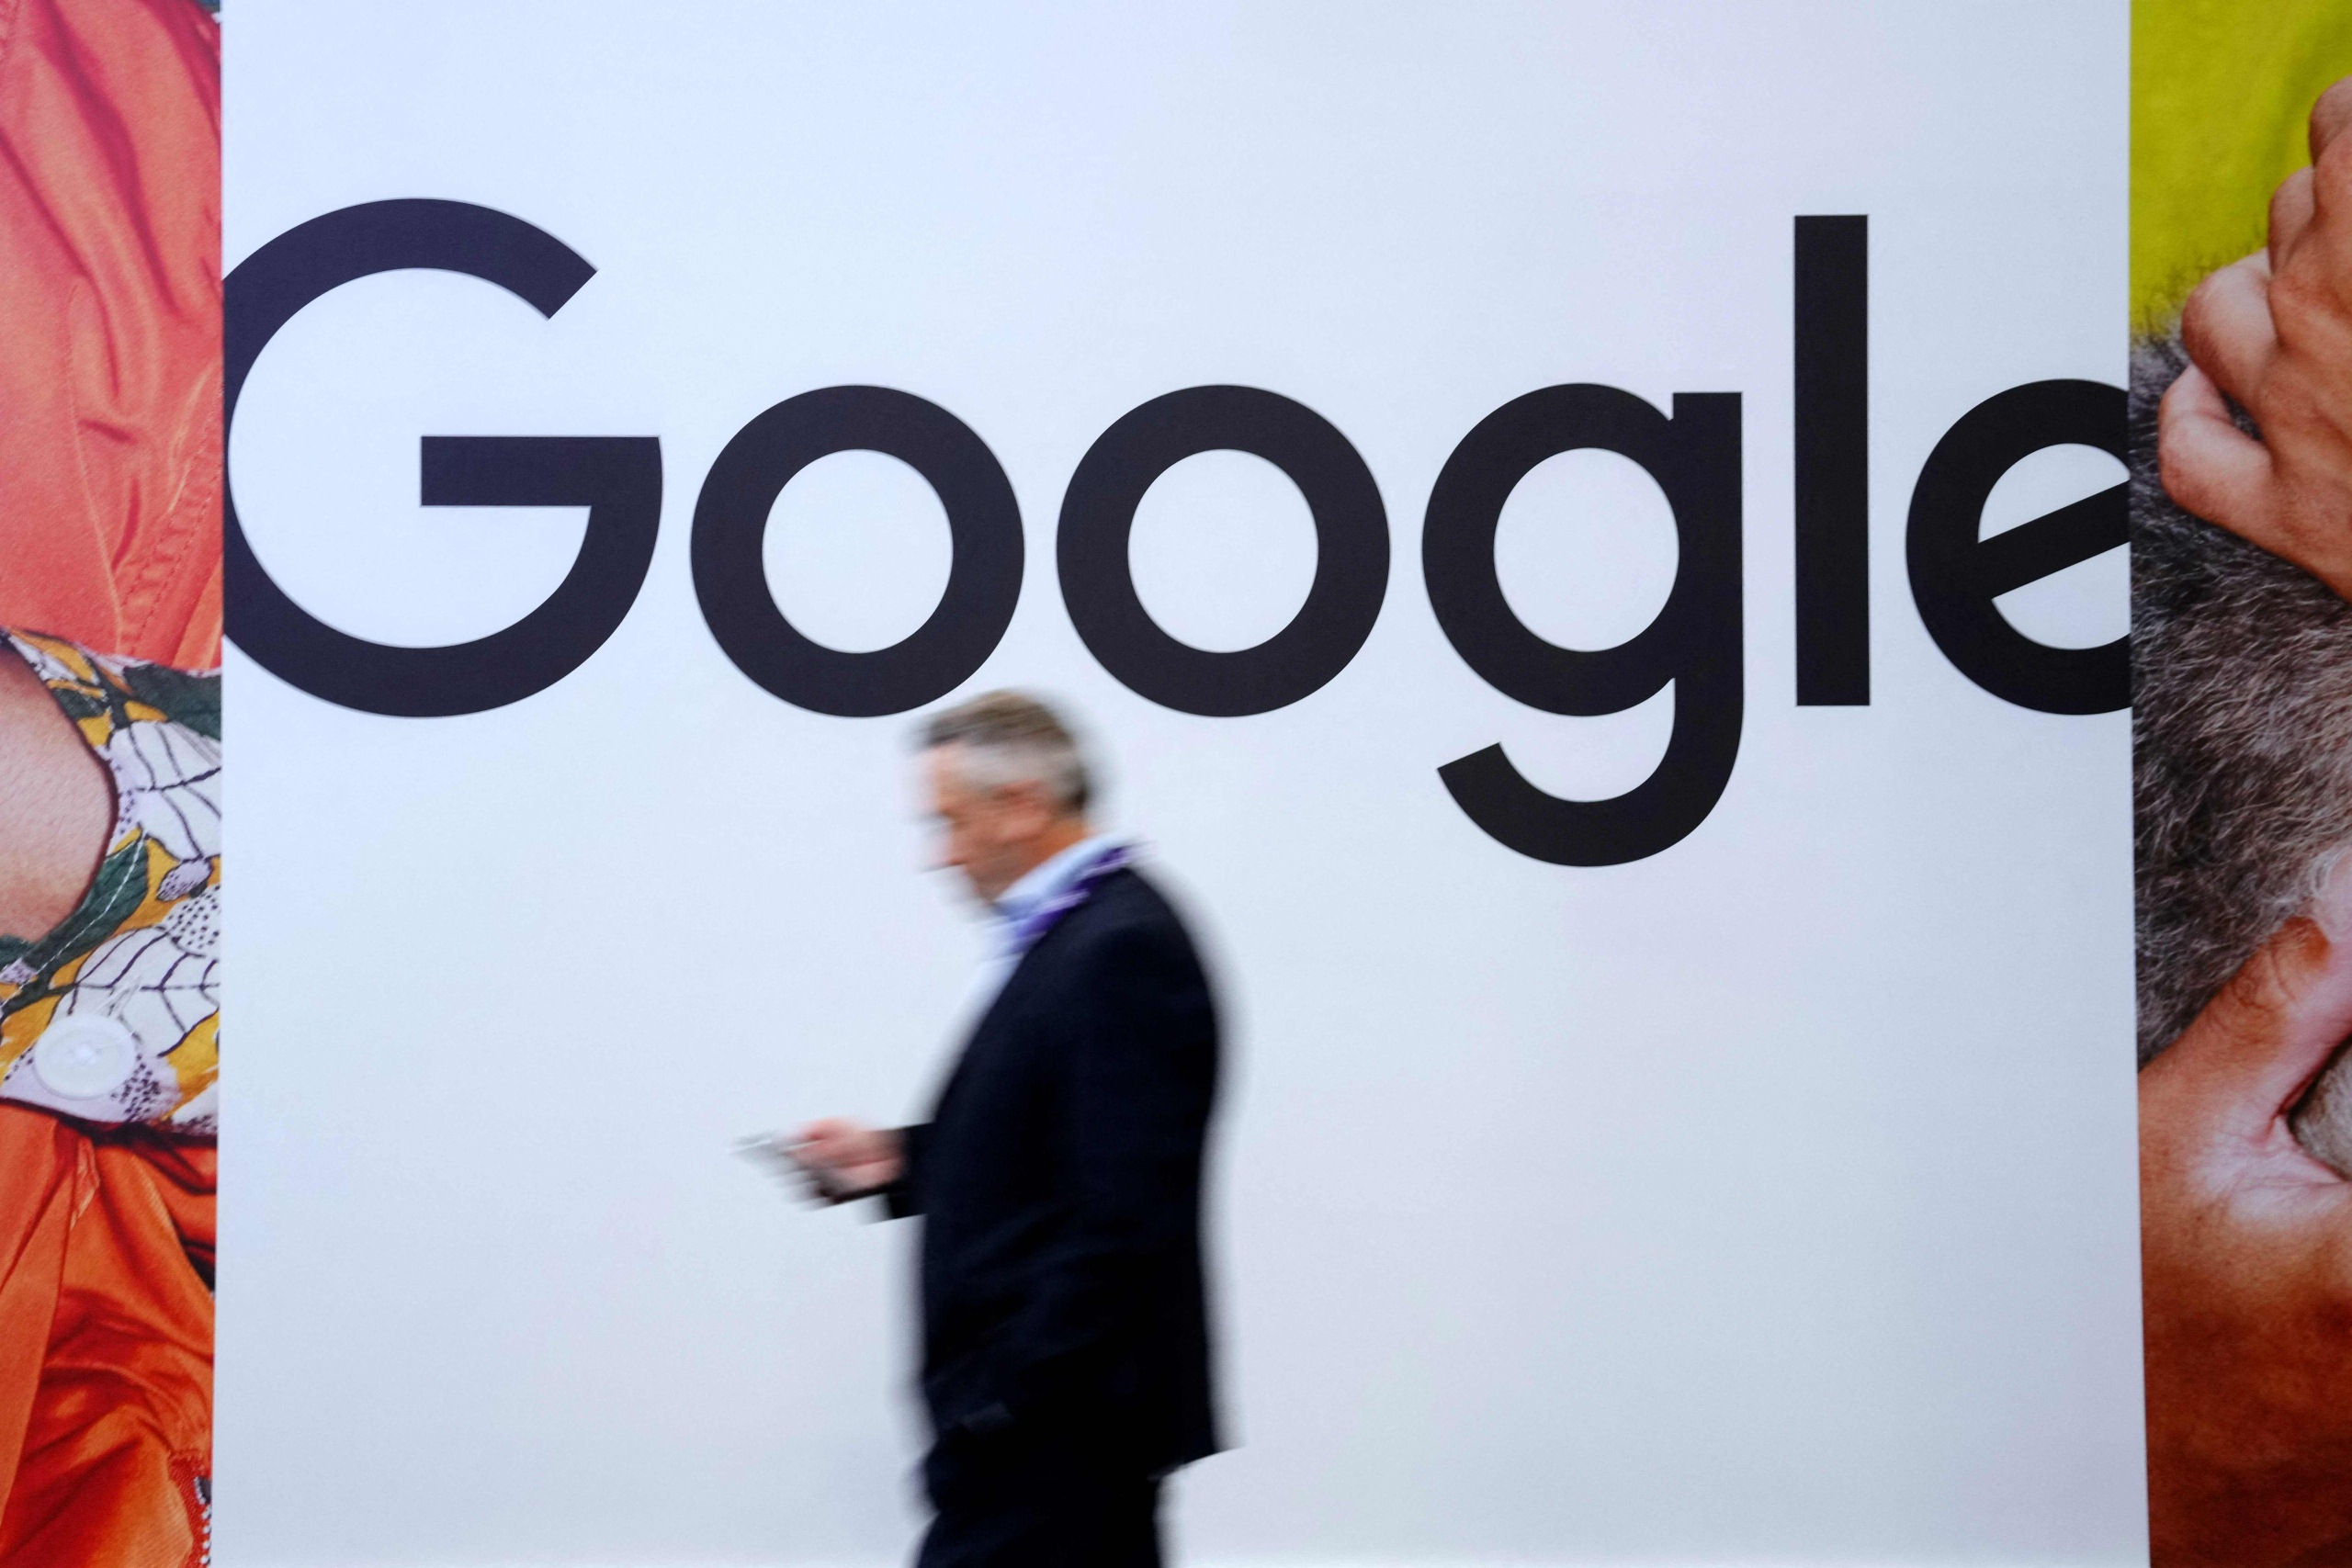 sanoma ja useat eurooppalaiset mediayhtiöt syyttävät googlea määräävän markkina-aseman hyväksikäytöstä